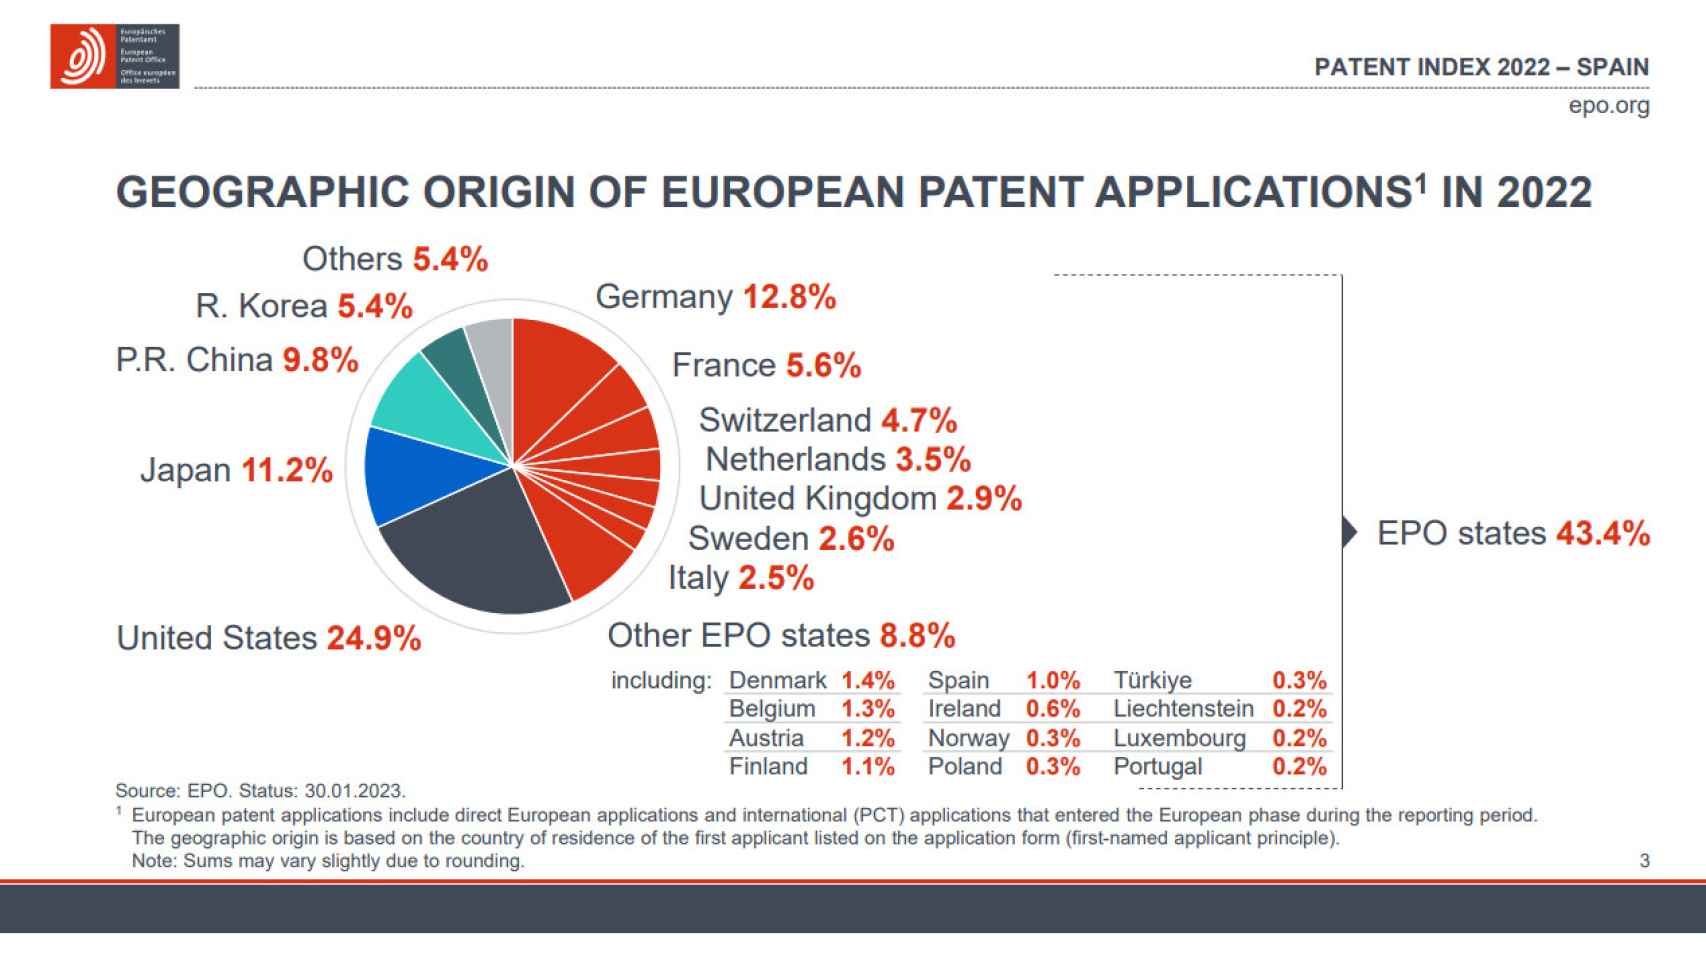 Las patentes europeas en 2022, en función de sus lugares de procedencia.